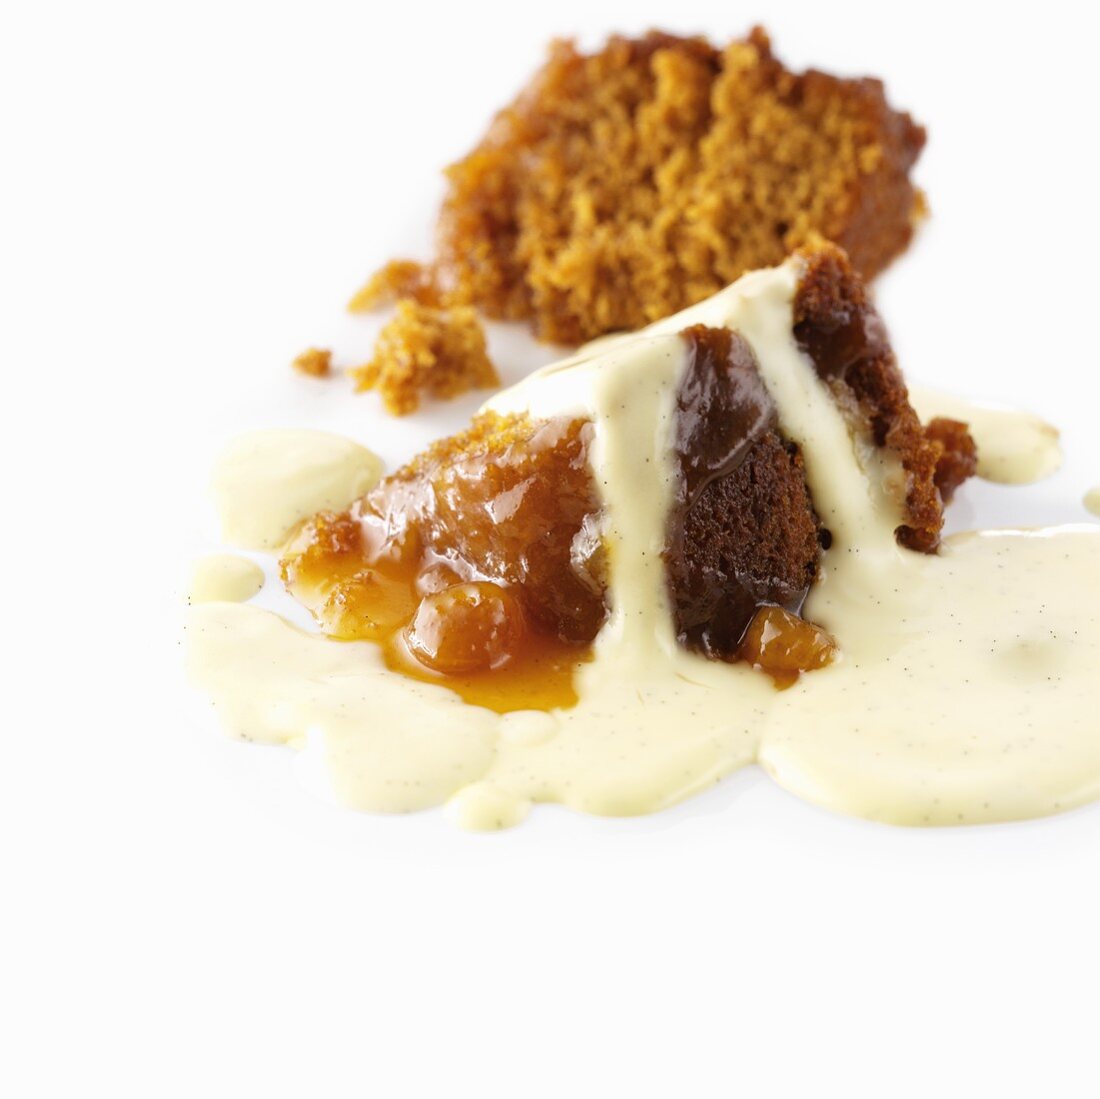 Sponge pudding and custard (UK)